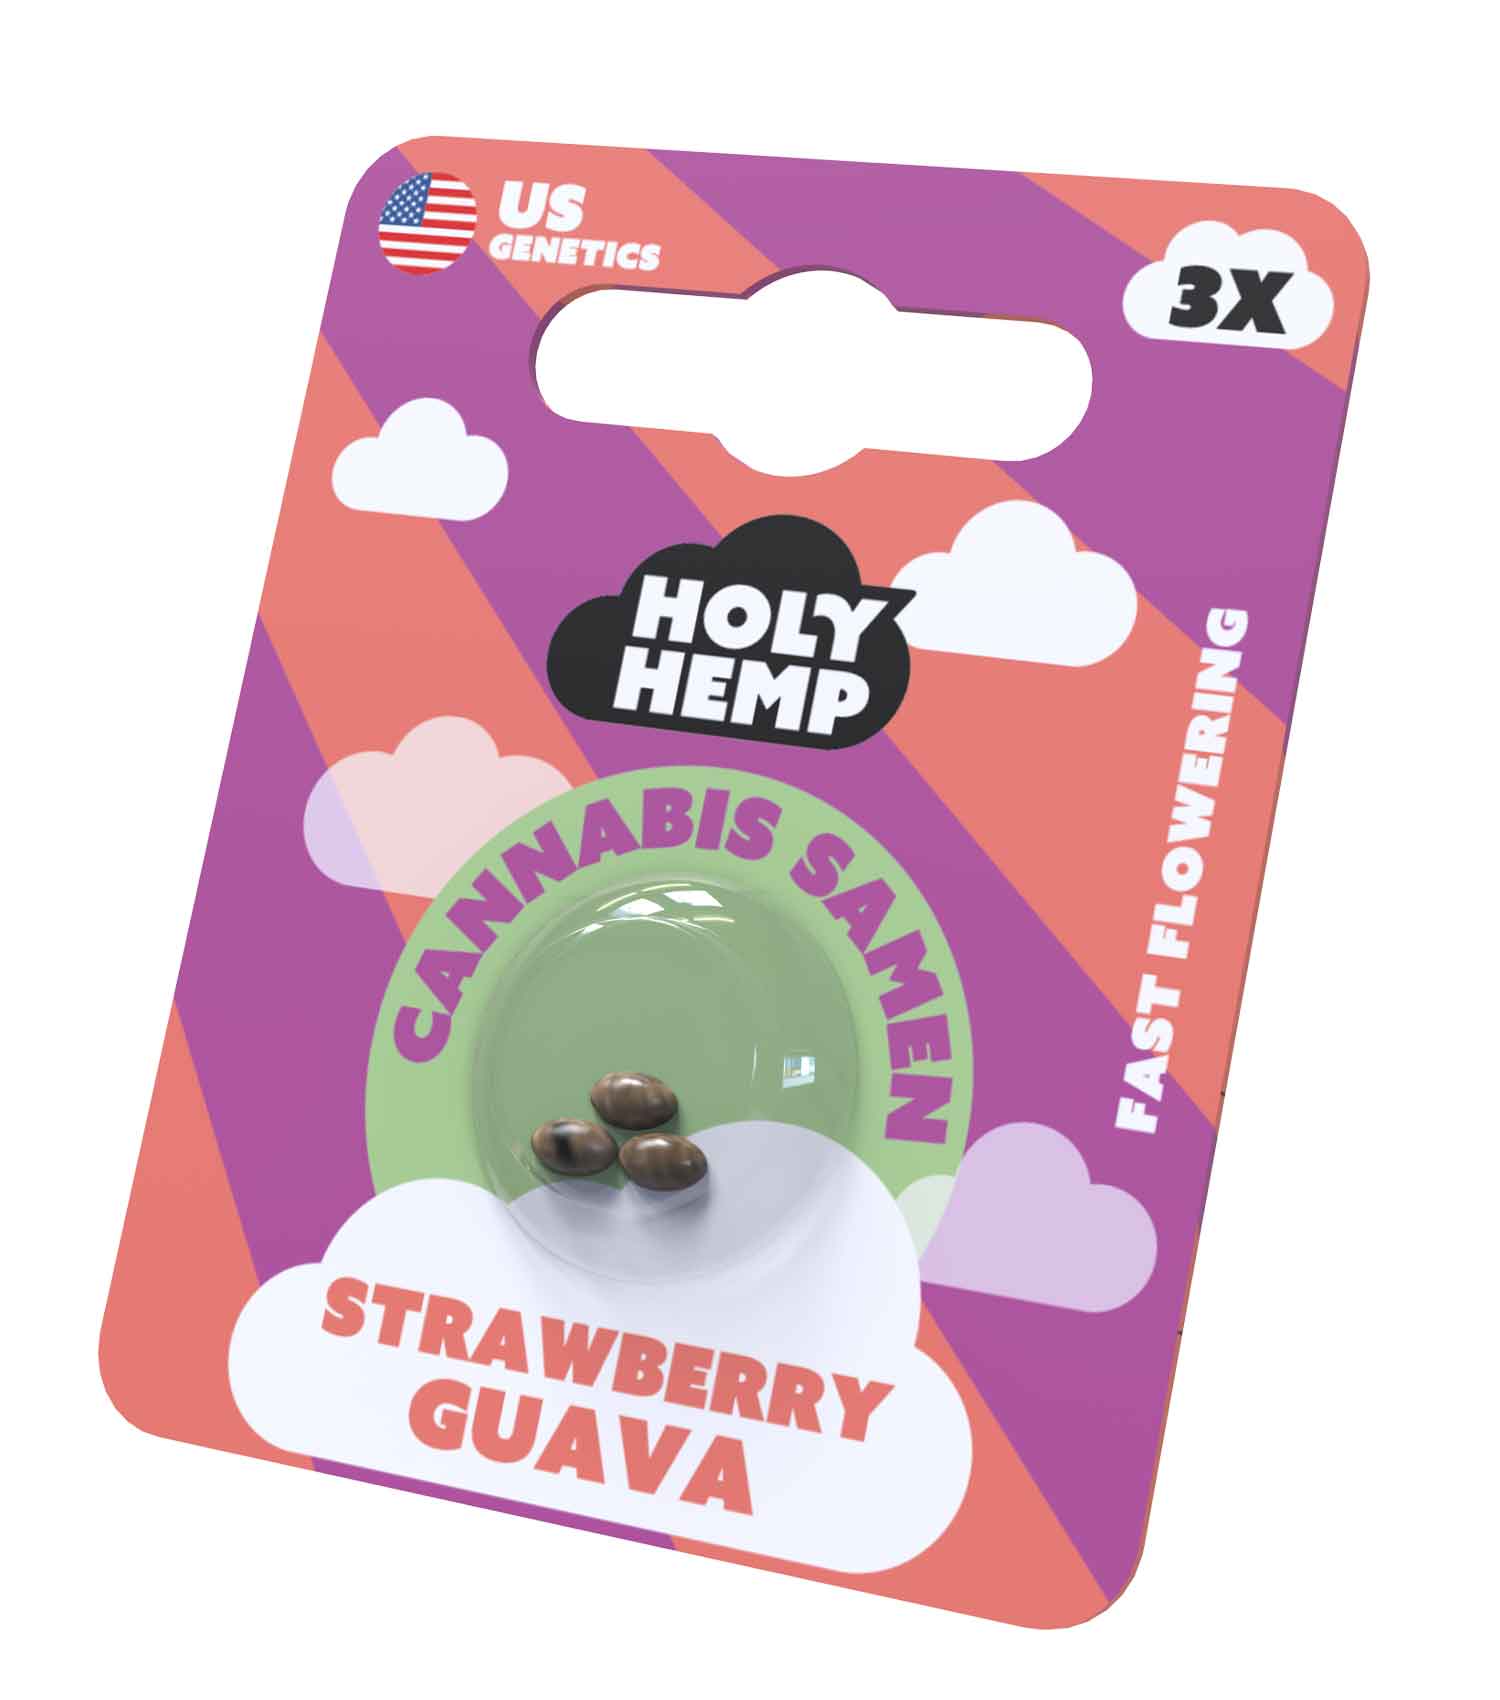 Strawberry Guava Cannabissamen